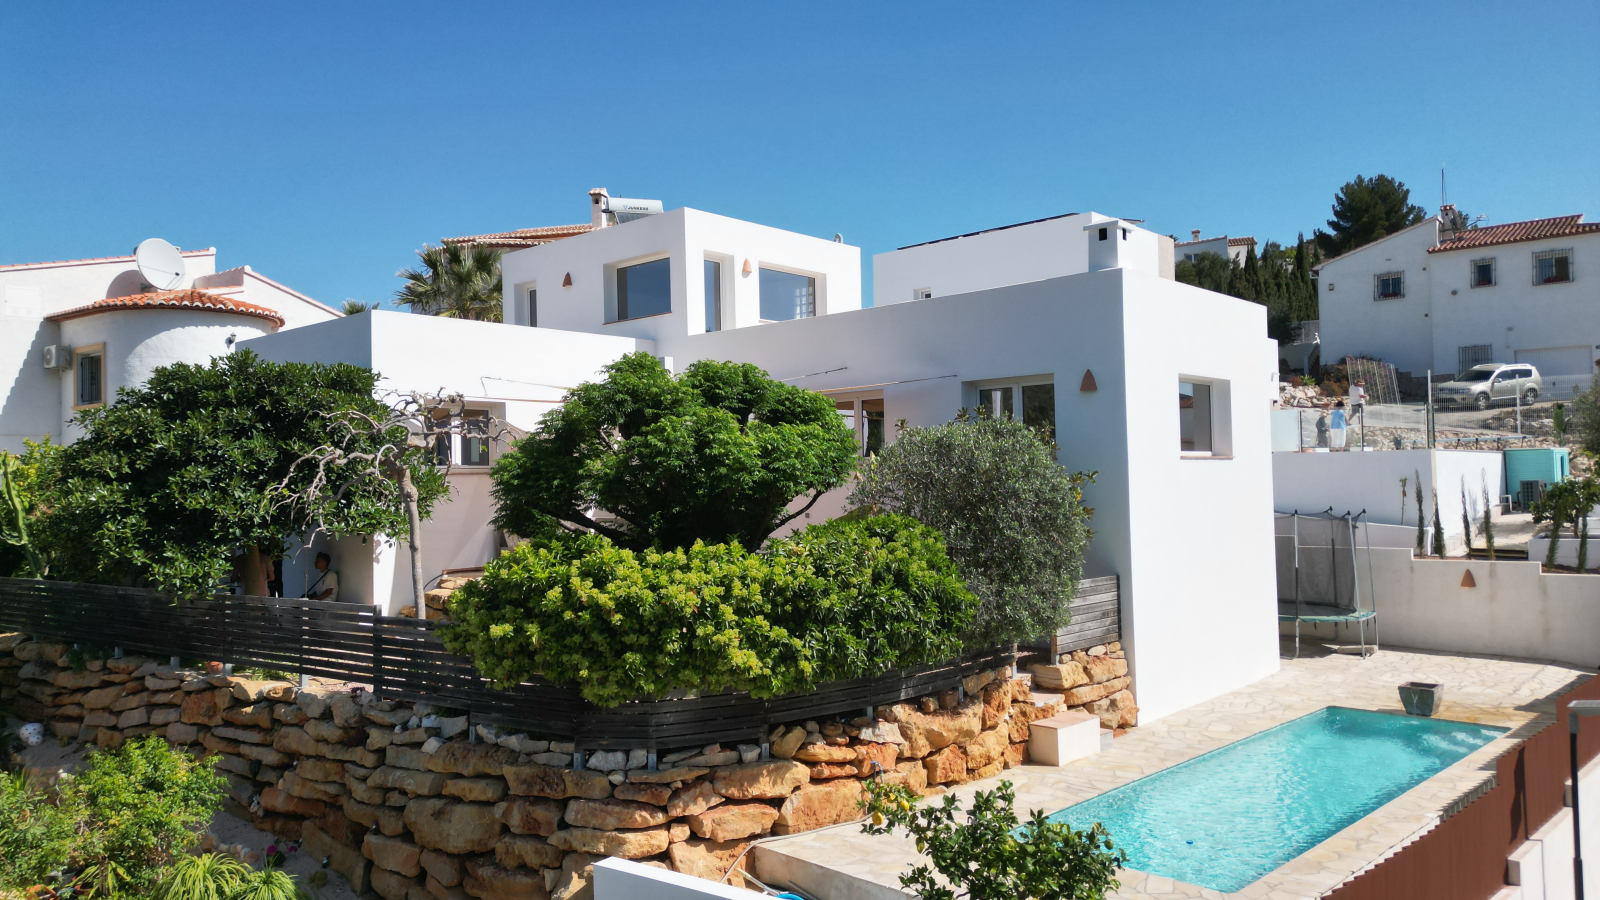 Modern villa in a sunny location on Monte Solana